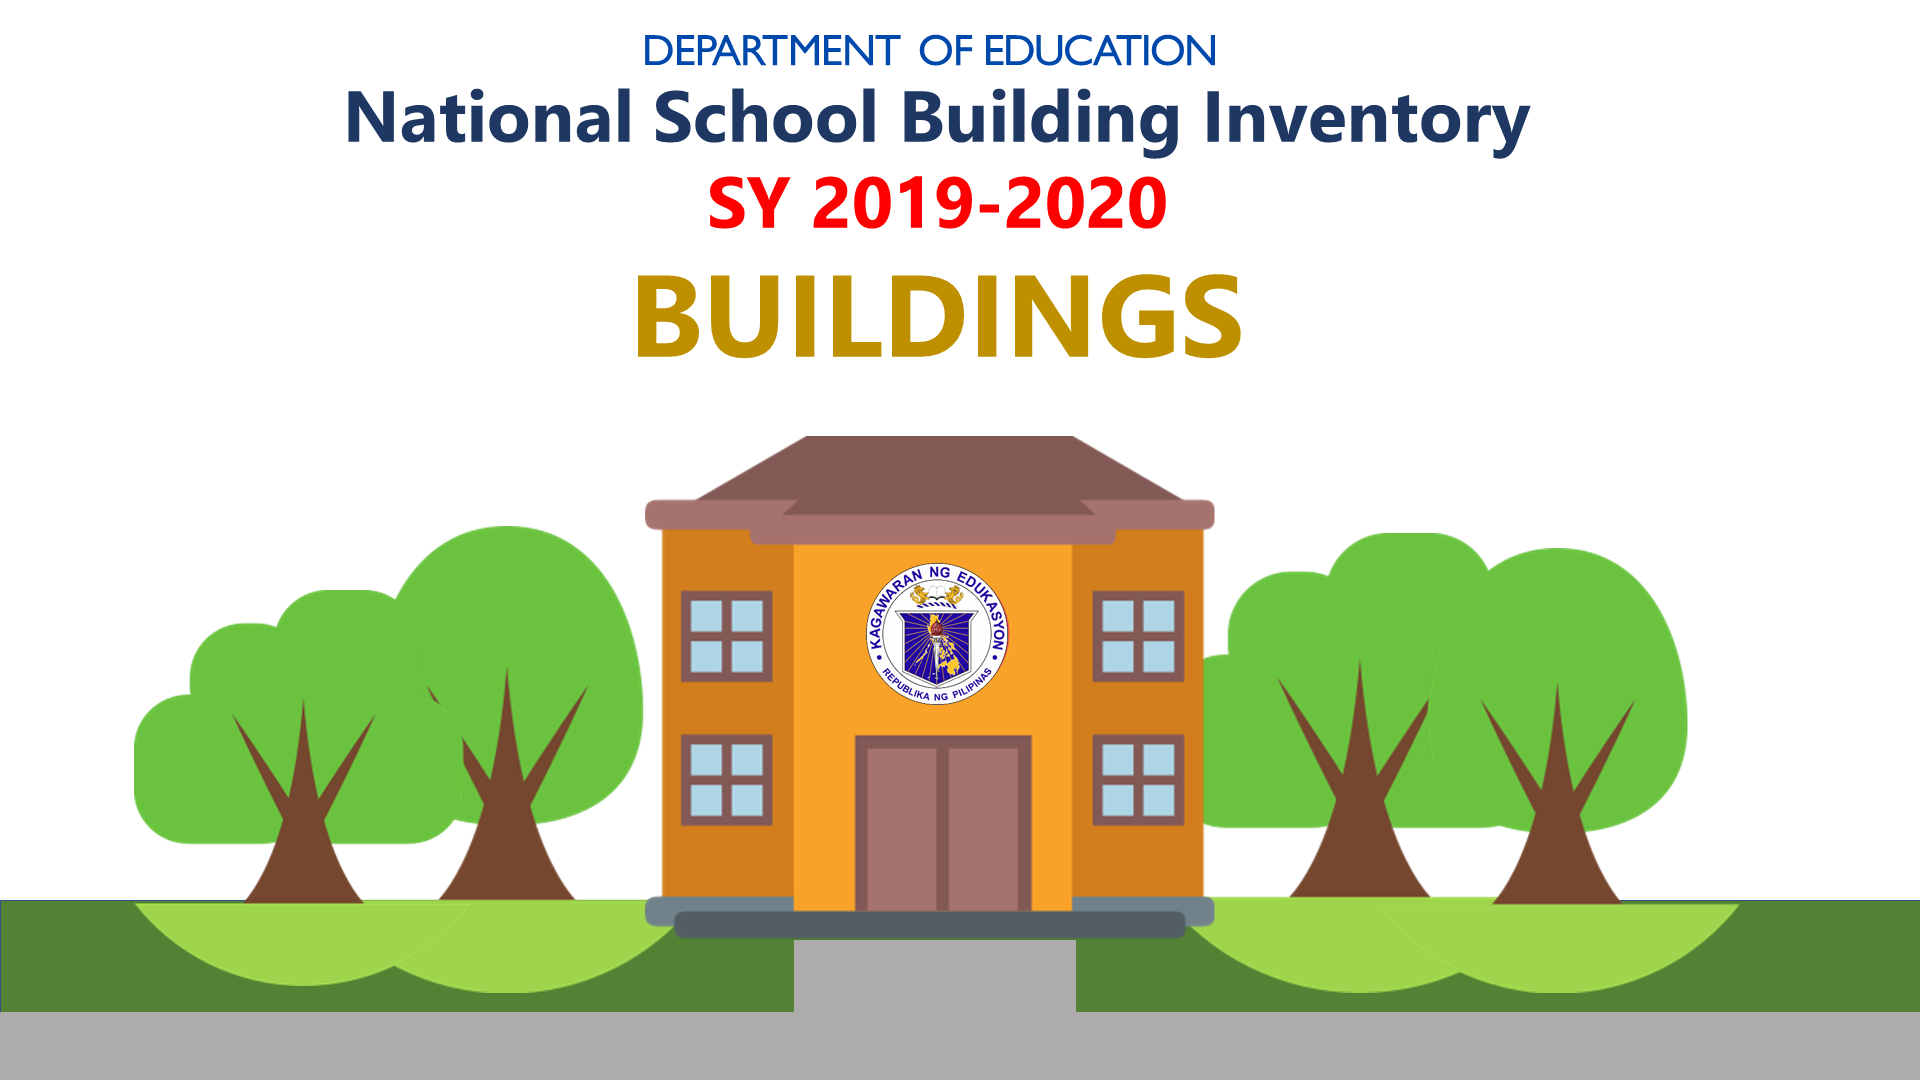 DepEd National School Building Inventory (NSBI)  - Buildings